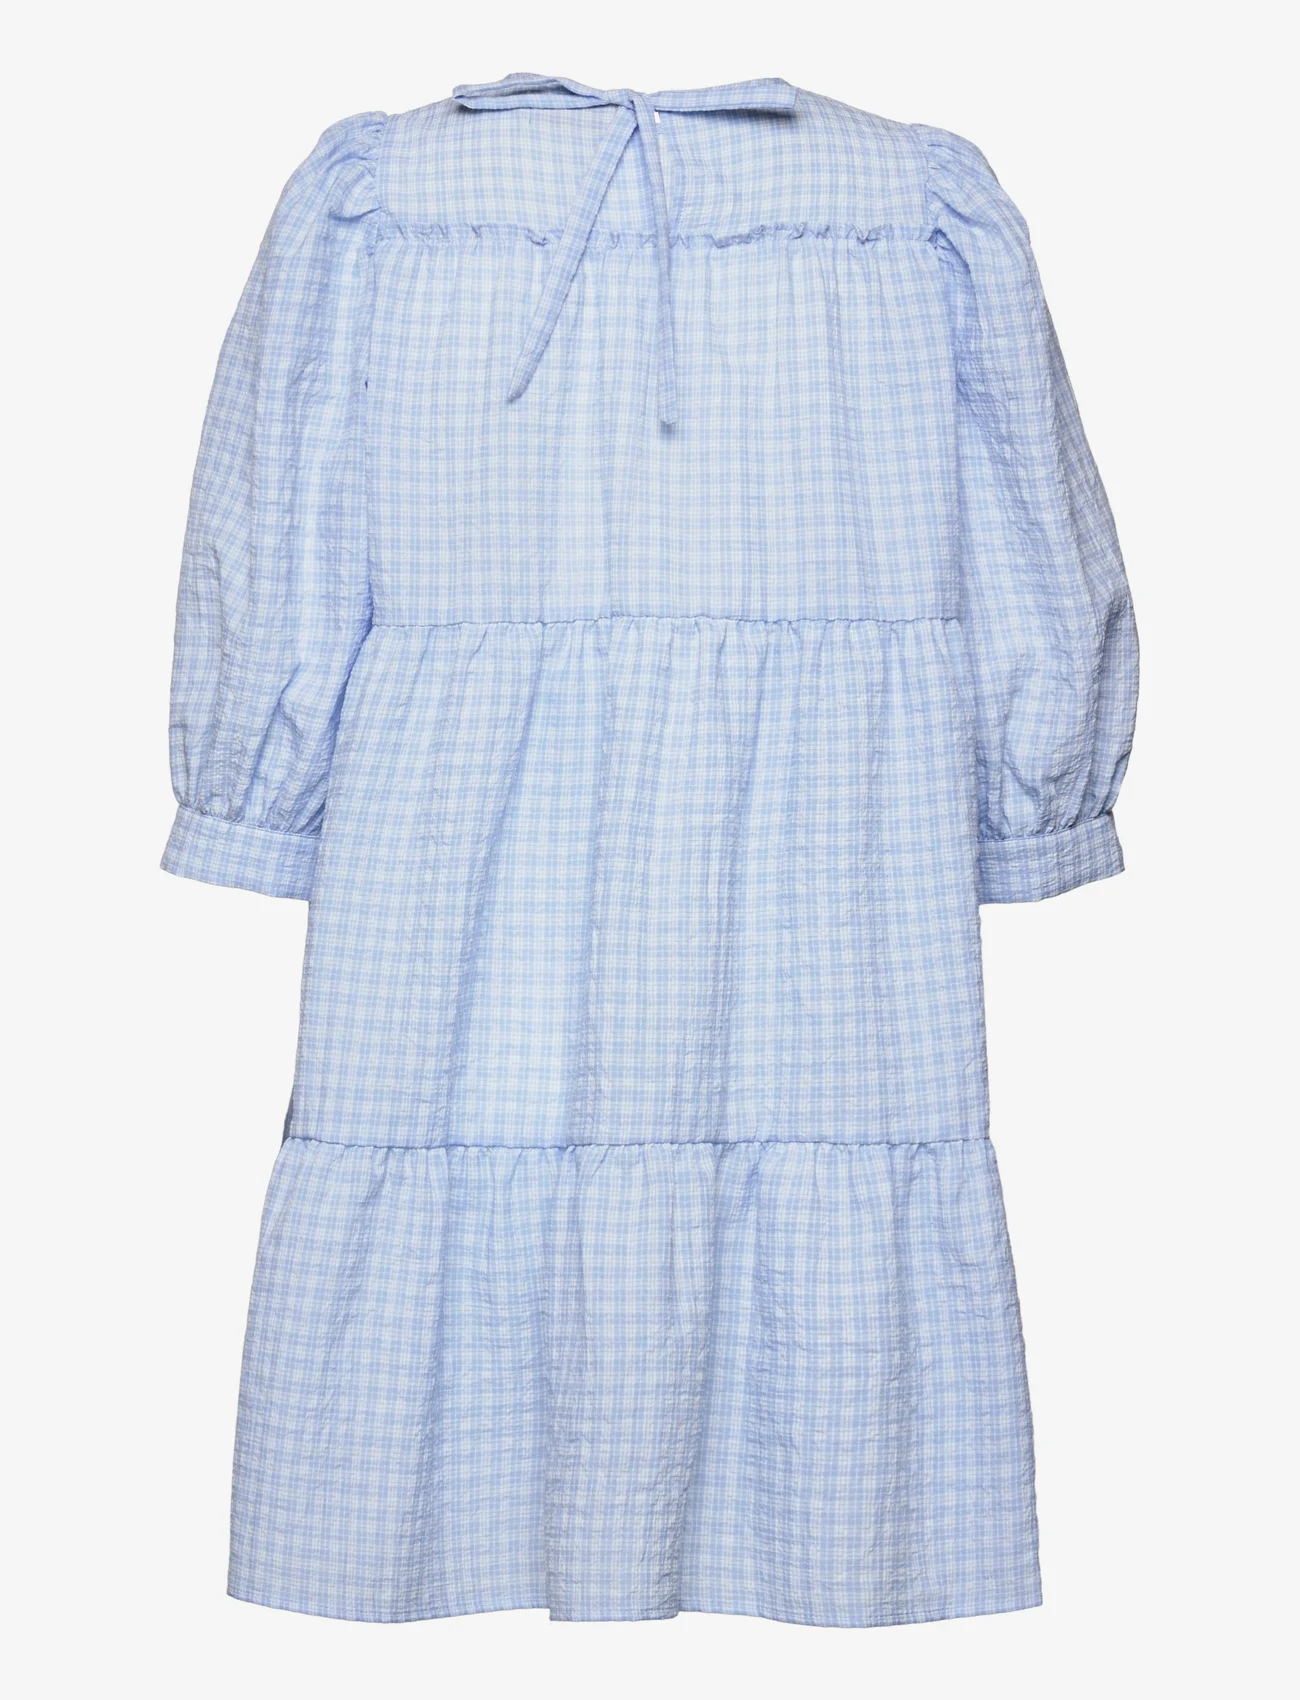 Minus - Rowen kjole - minikleidid - blue checked - 1